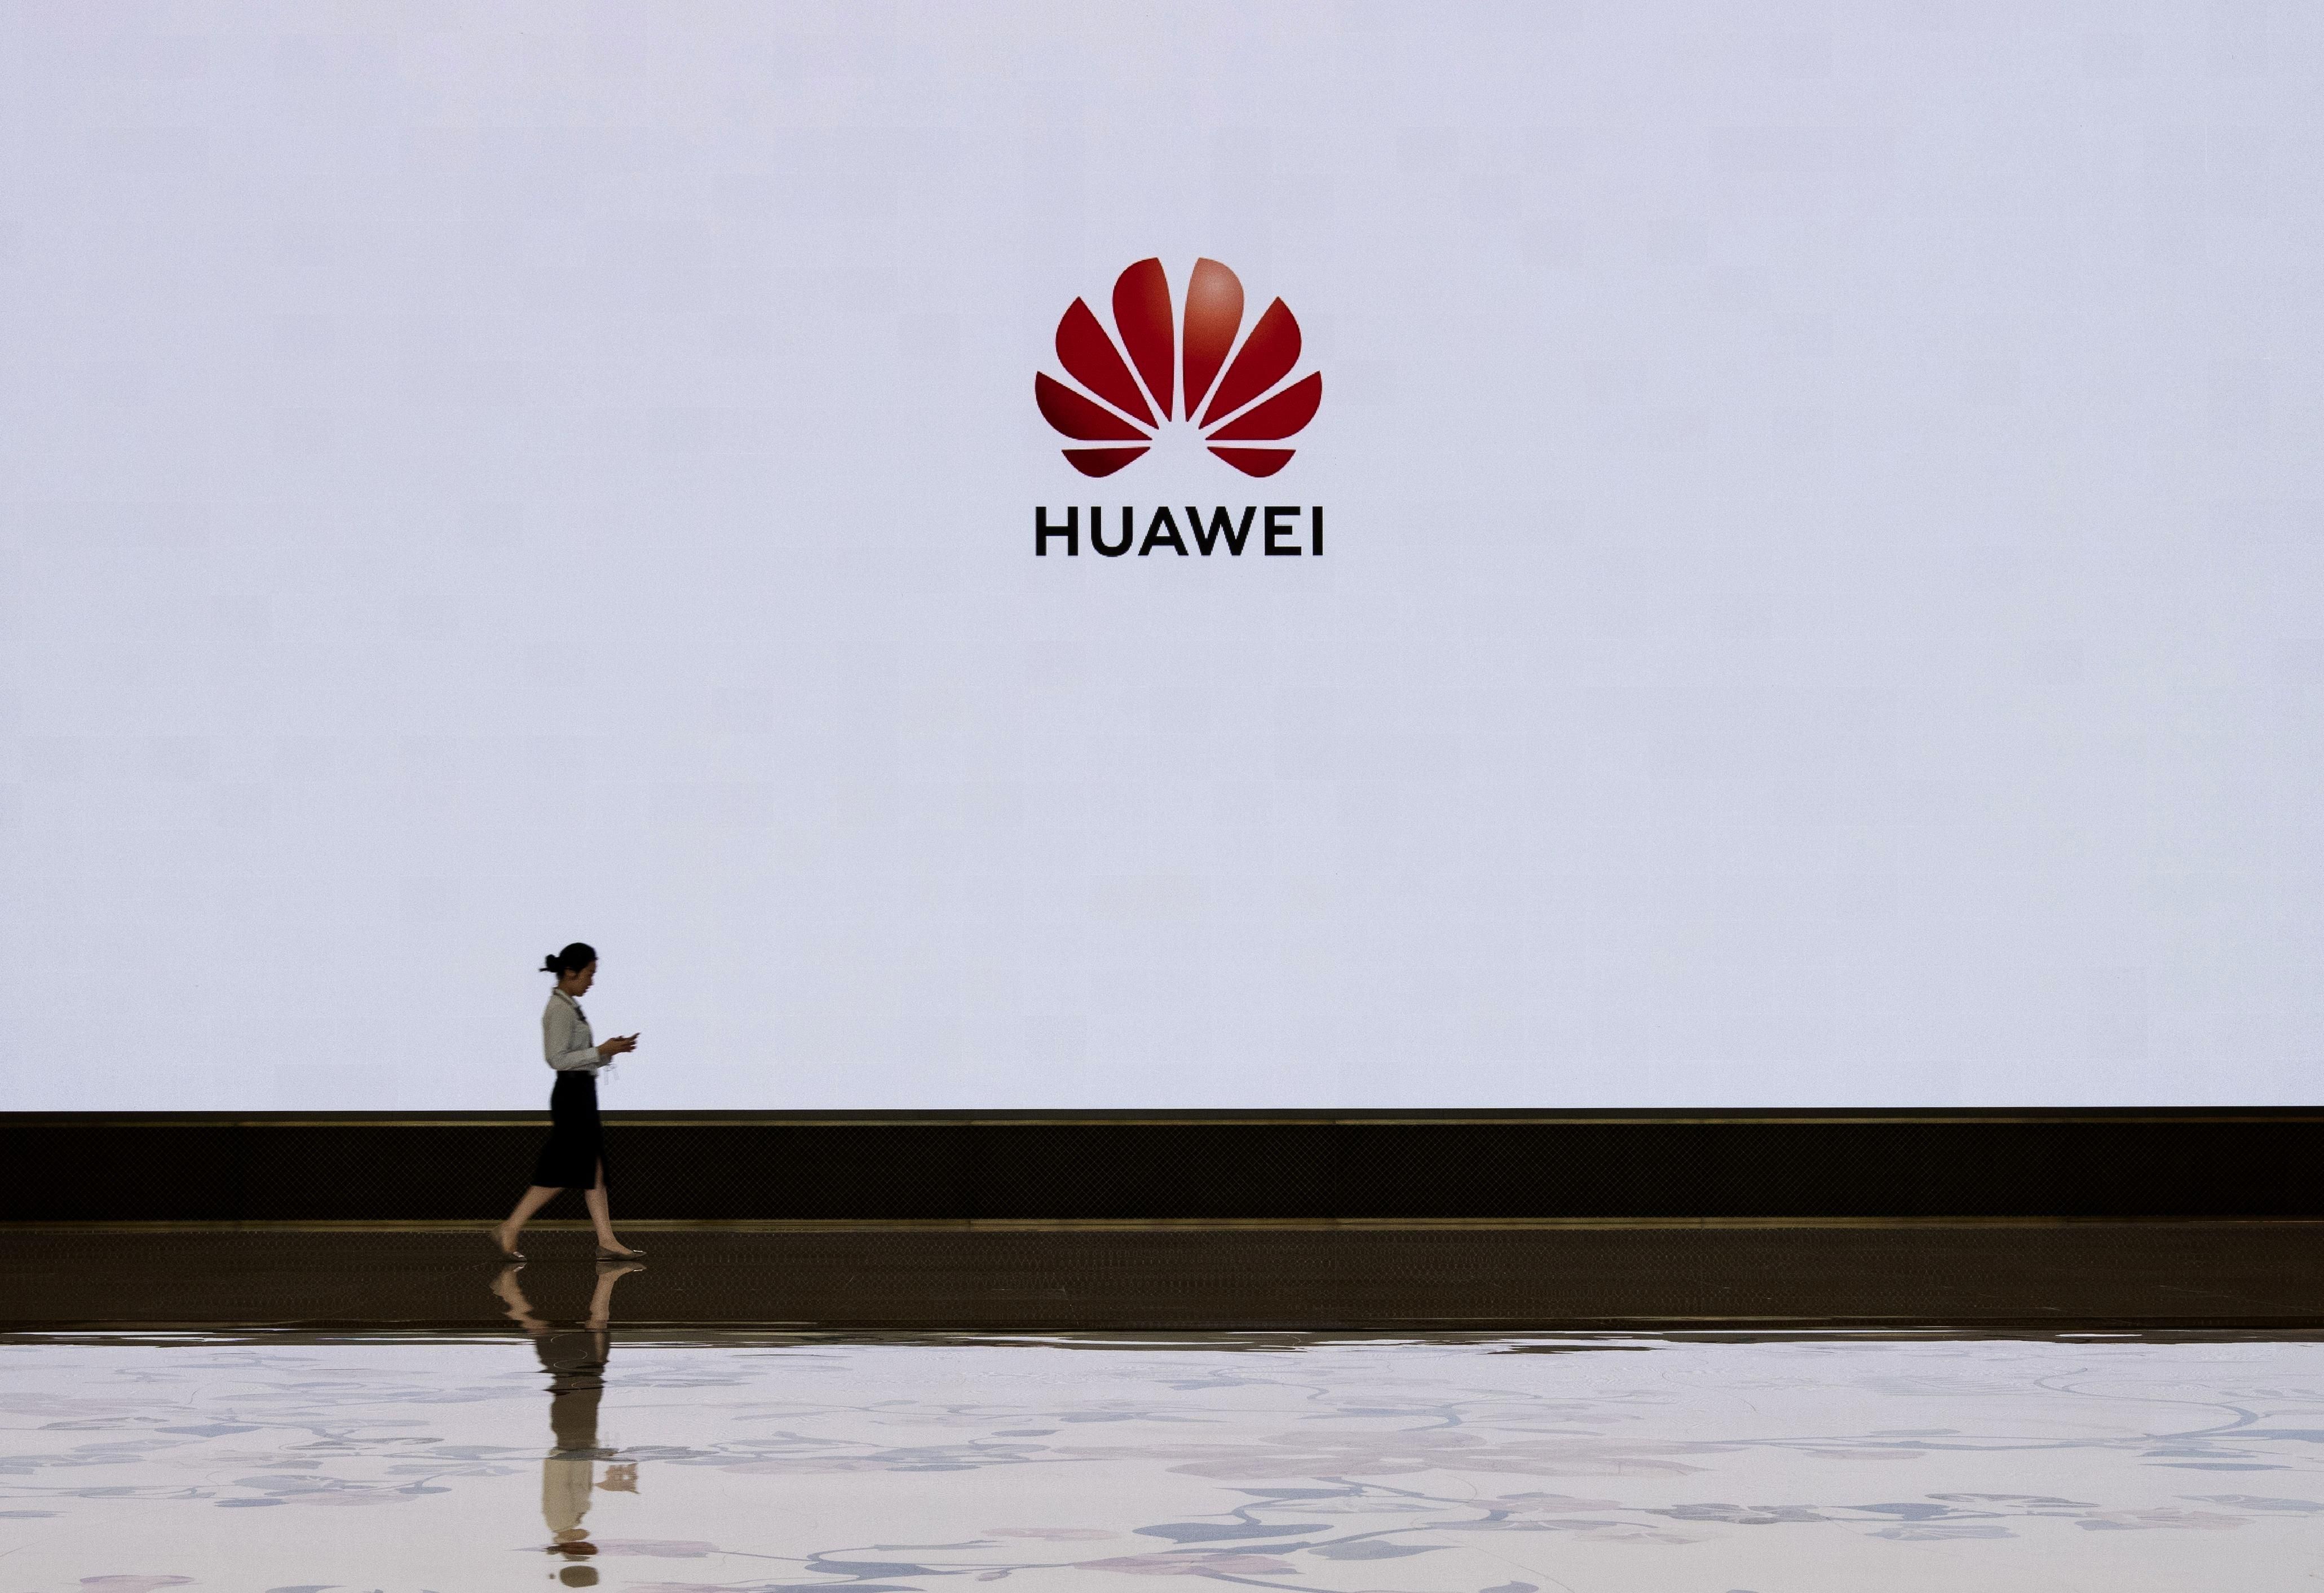 Сотрудничество с Huawei прекратят еще четыре ведущие технологические корпорации